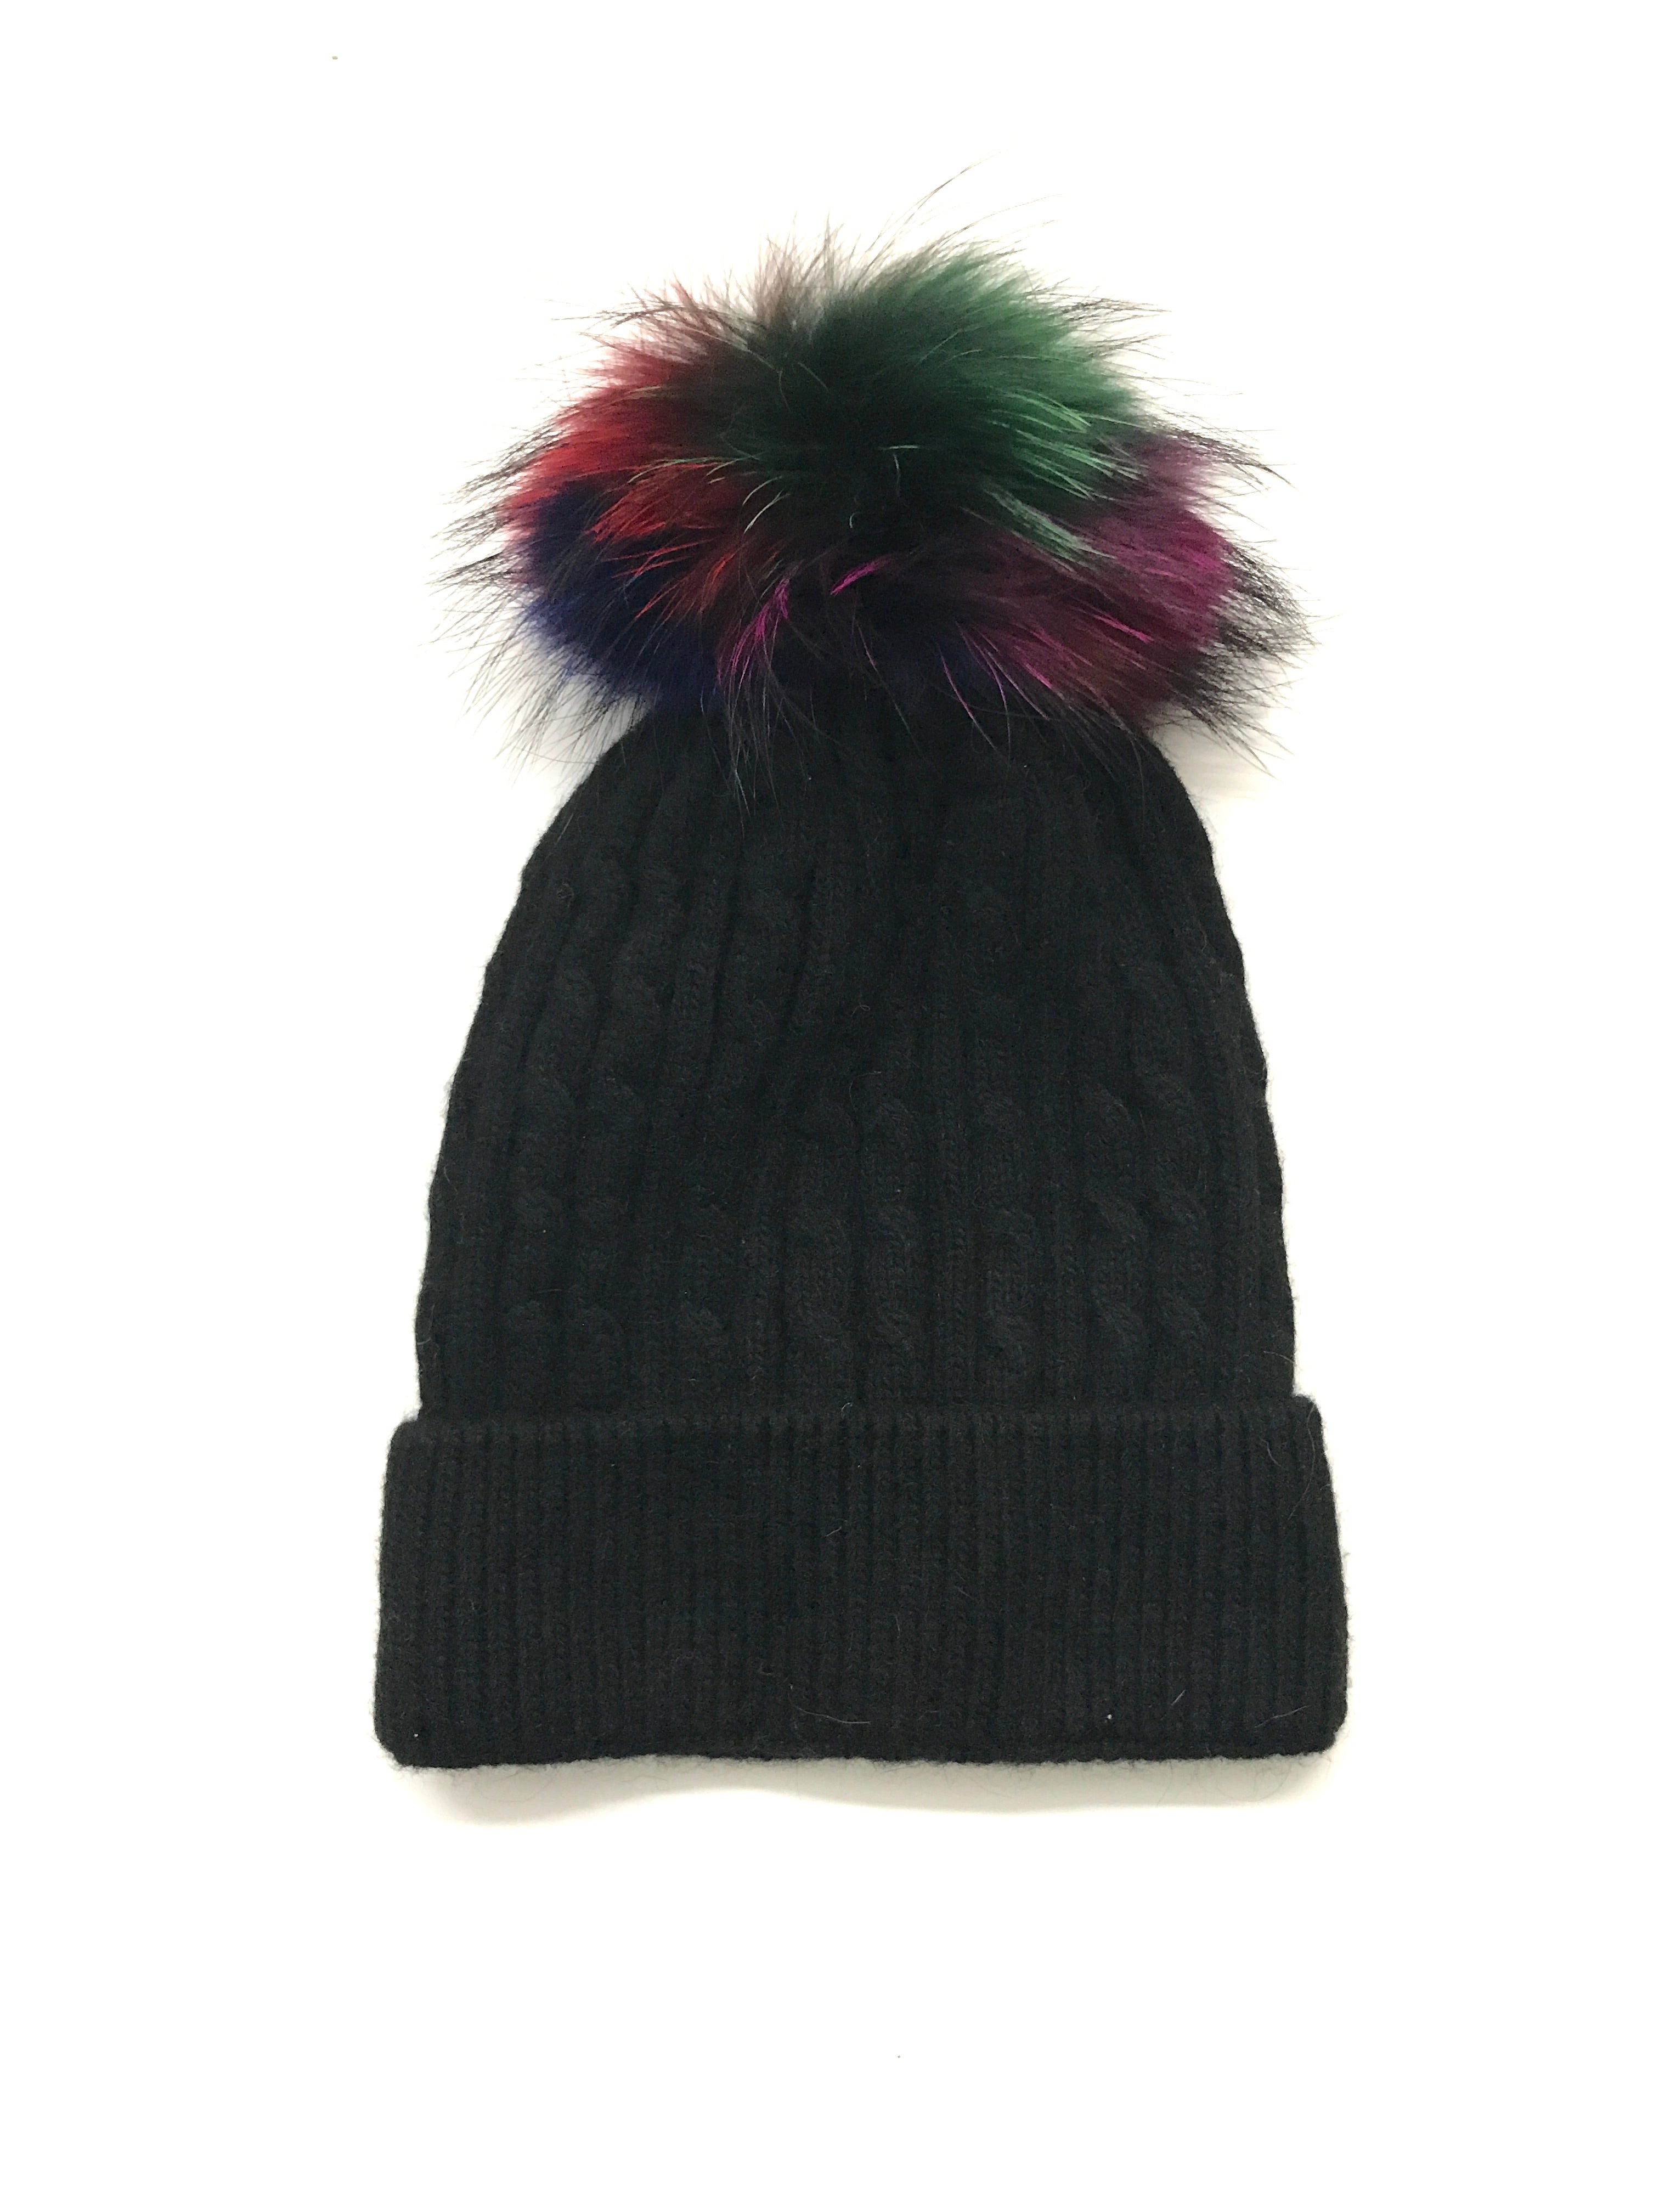 Aspen Cable Knit Pom Pom Hat Black/Autumn - FINAL SALE